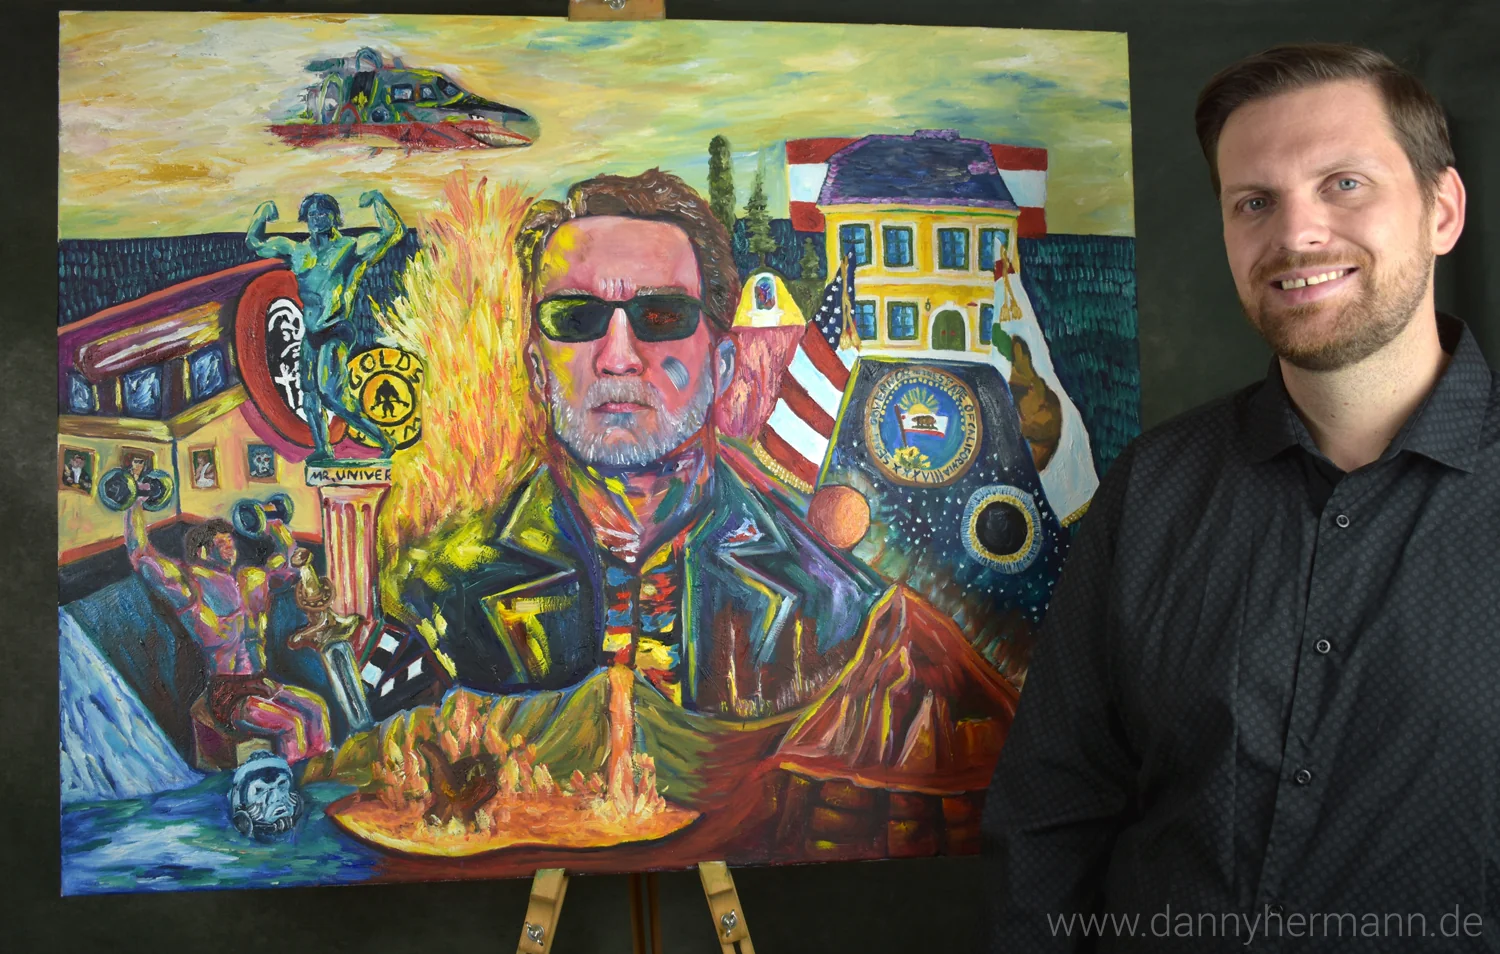 Der Bildende Künstler Danny Hermann neben dem Kunstwerk Arnie's Life